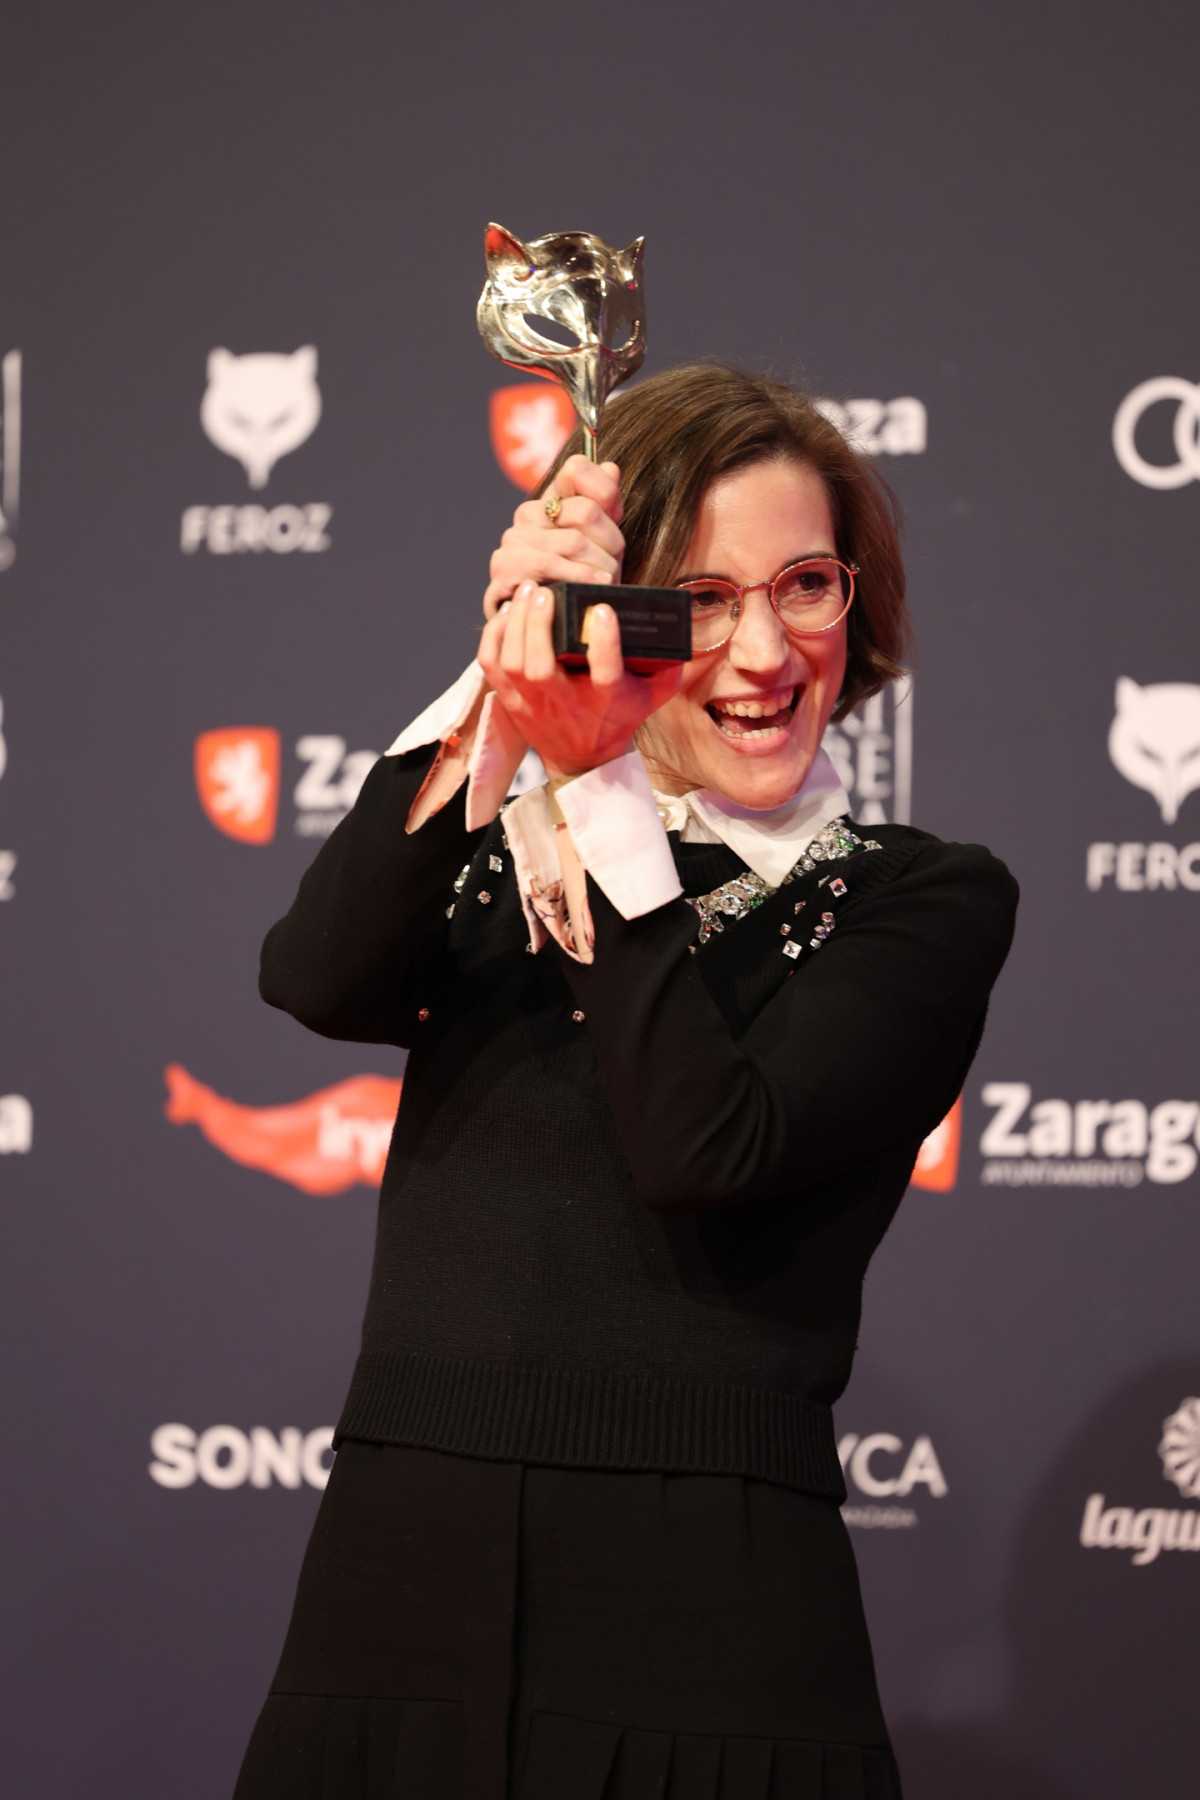 La directora de cine Carla Simón posa en el photocall tras recibir  el premio a 'Mejor dirección' por 'Alcarràs' durante la gala de la X edición de los Premios Feroz en el Auditorio de Zaragoza, a